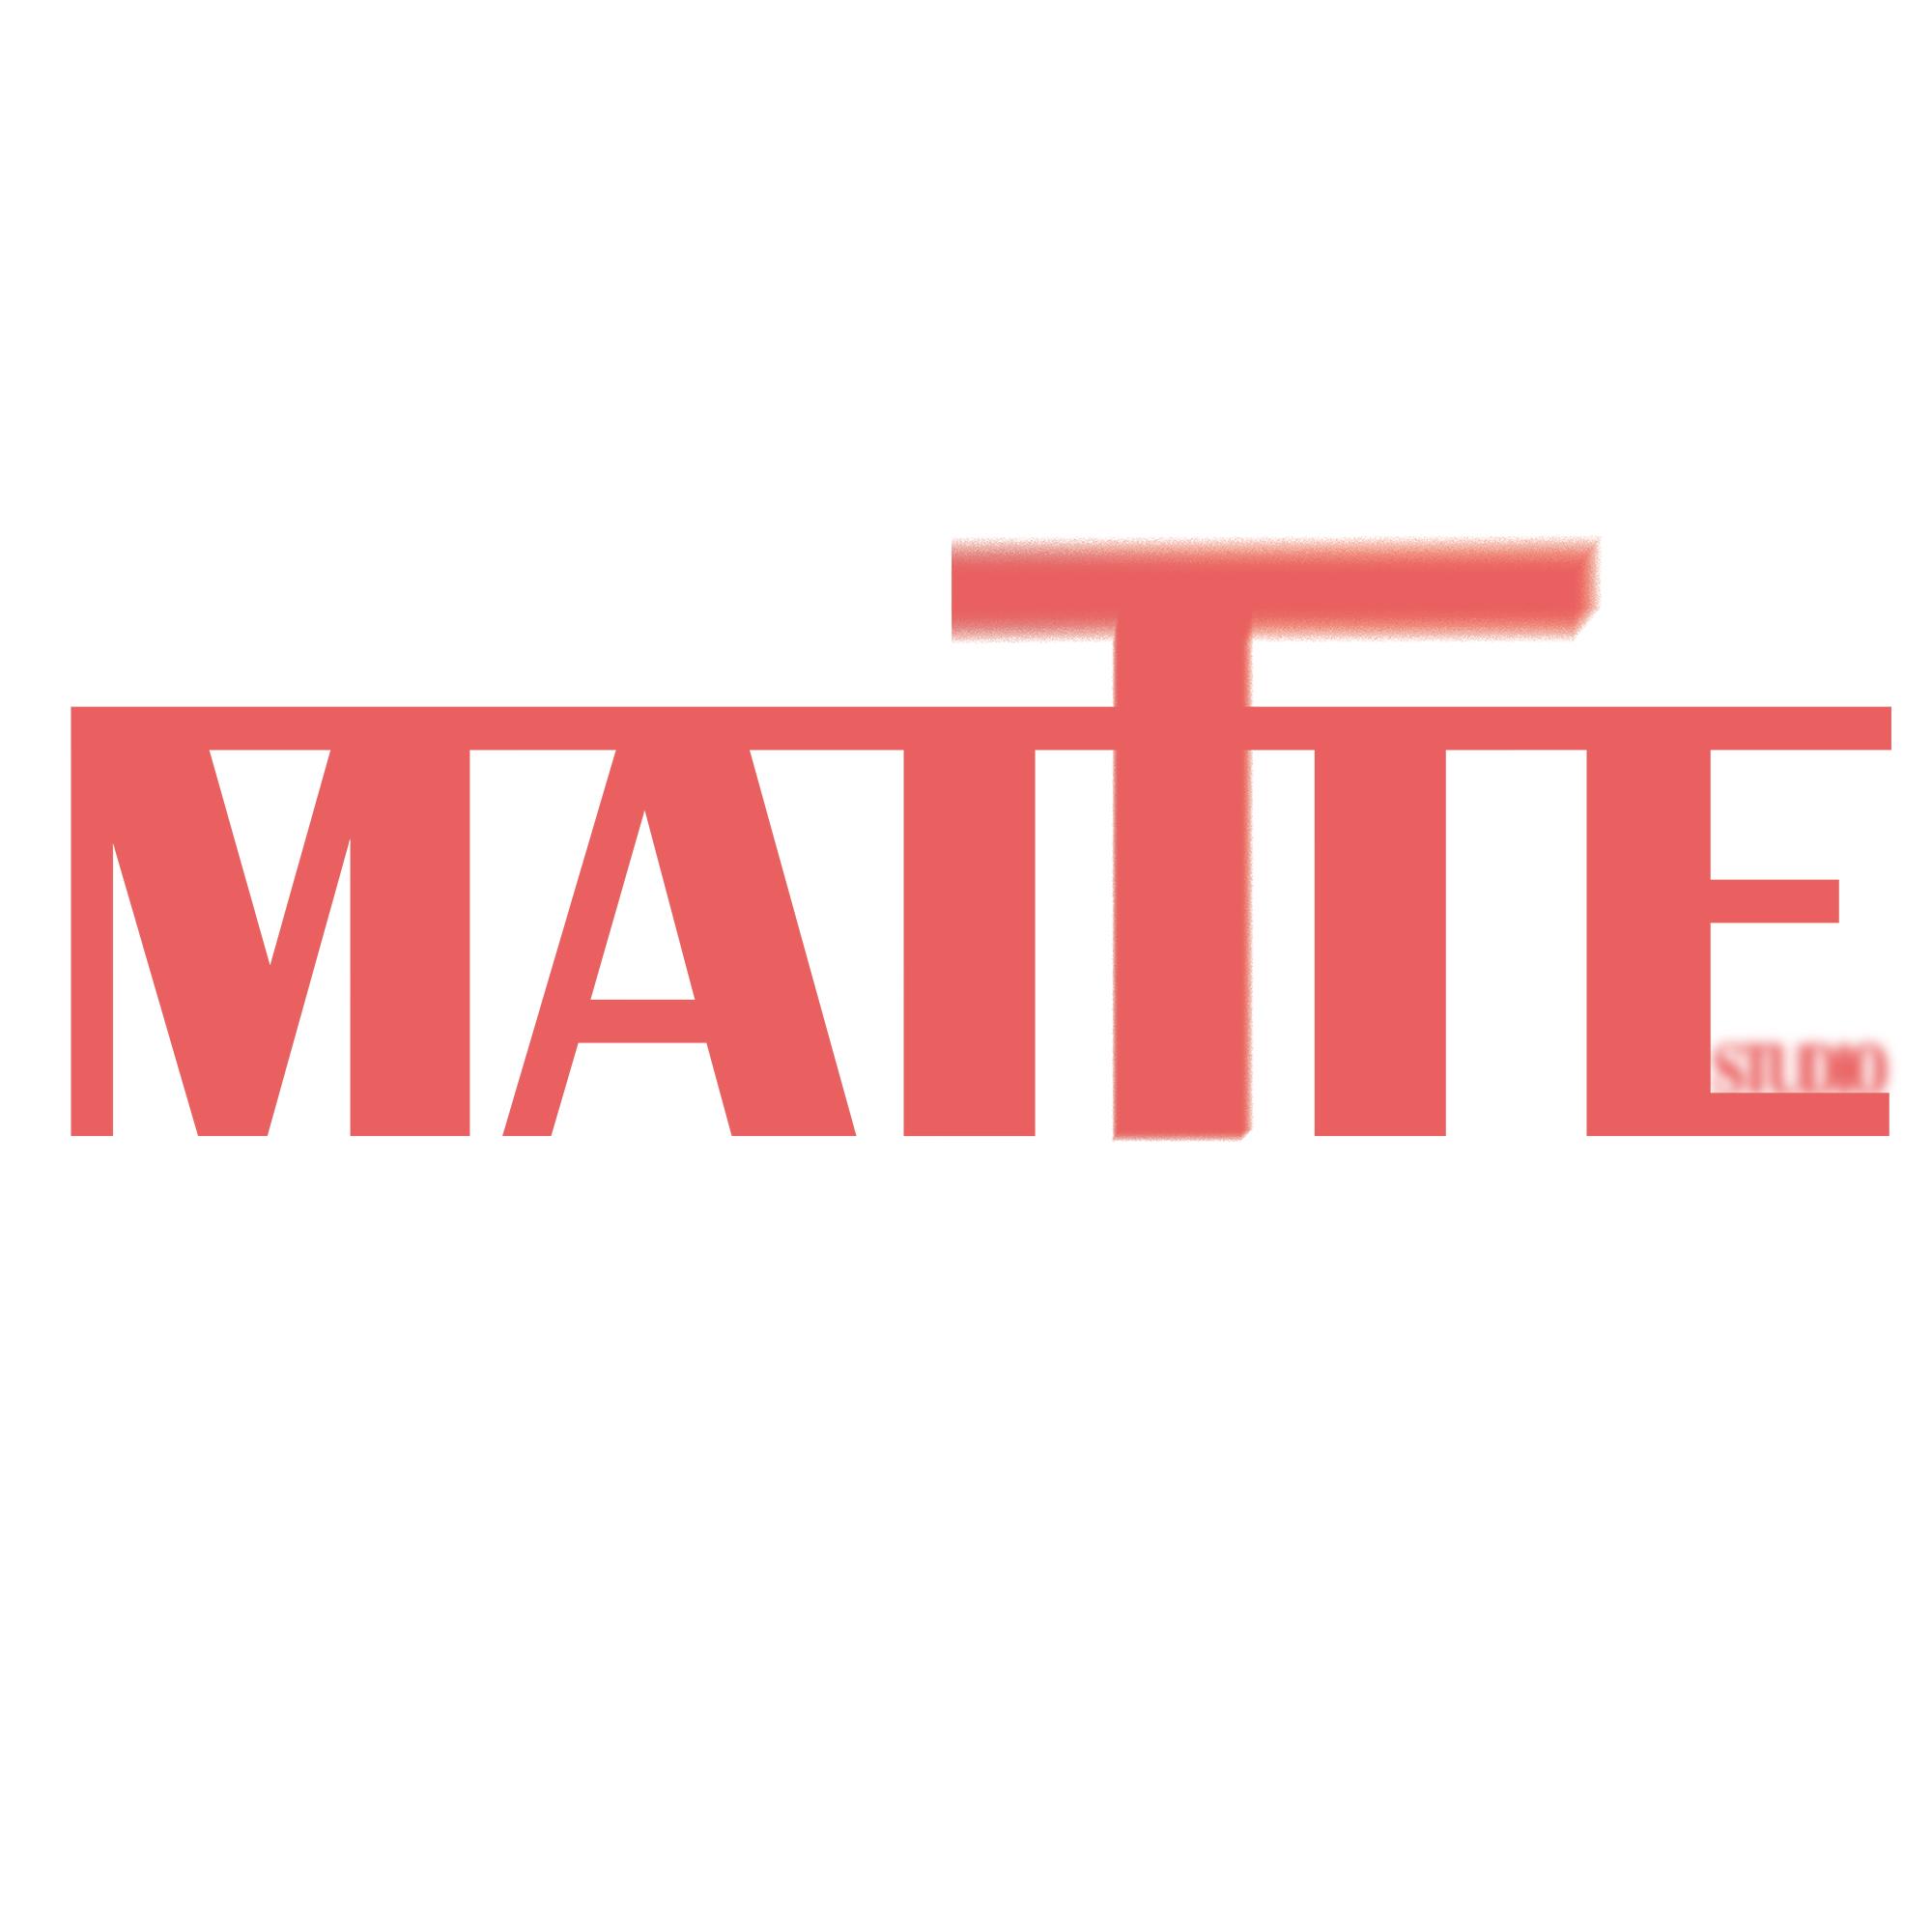 Mattte Studio